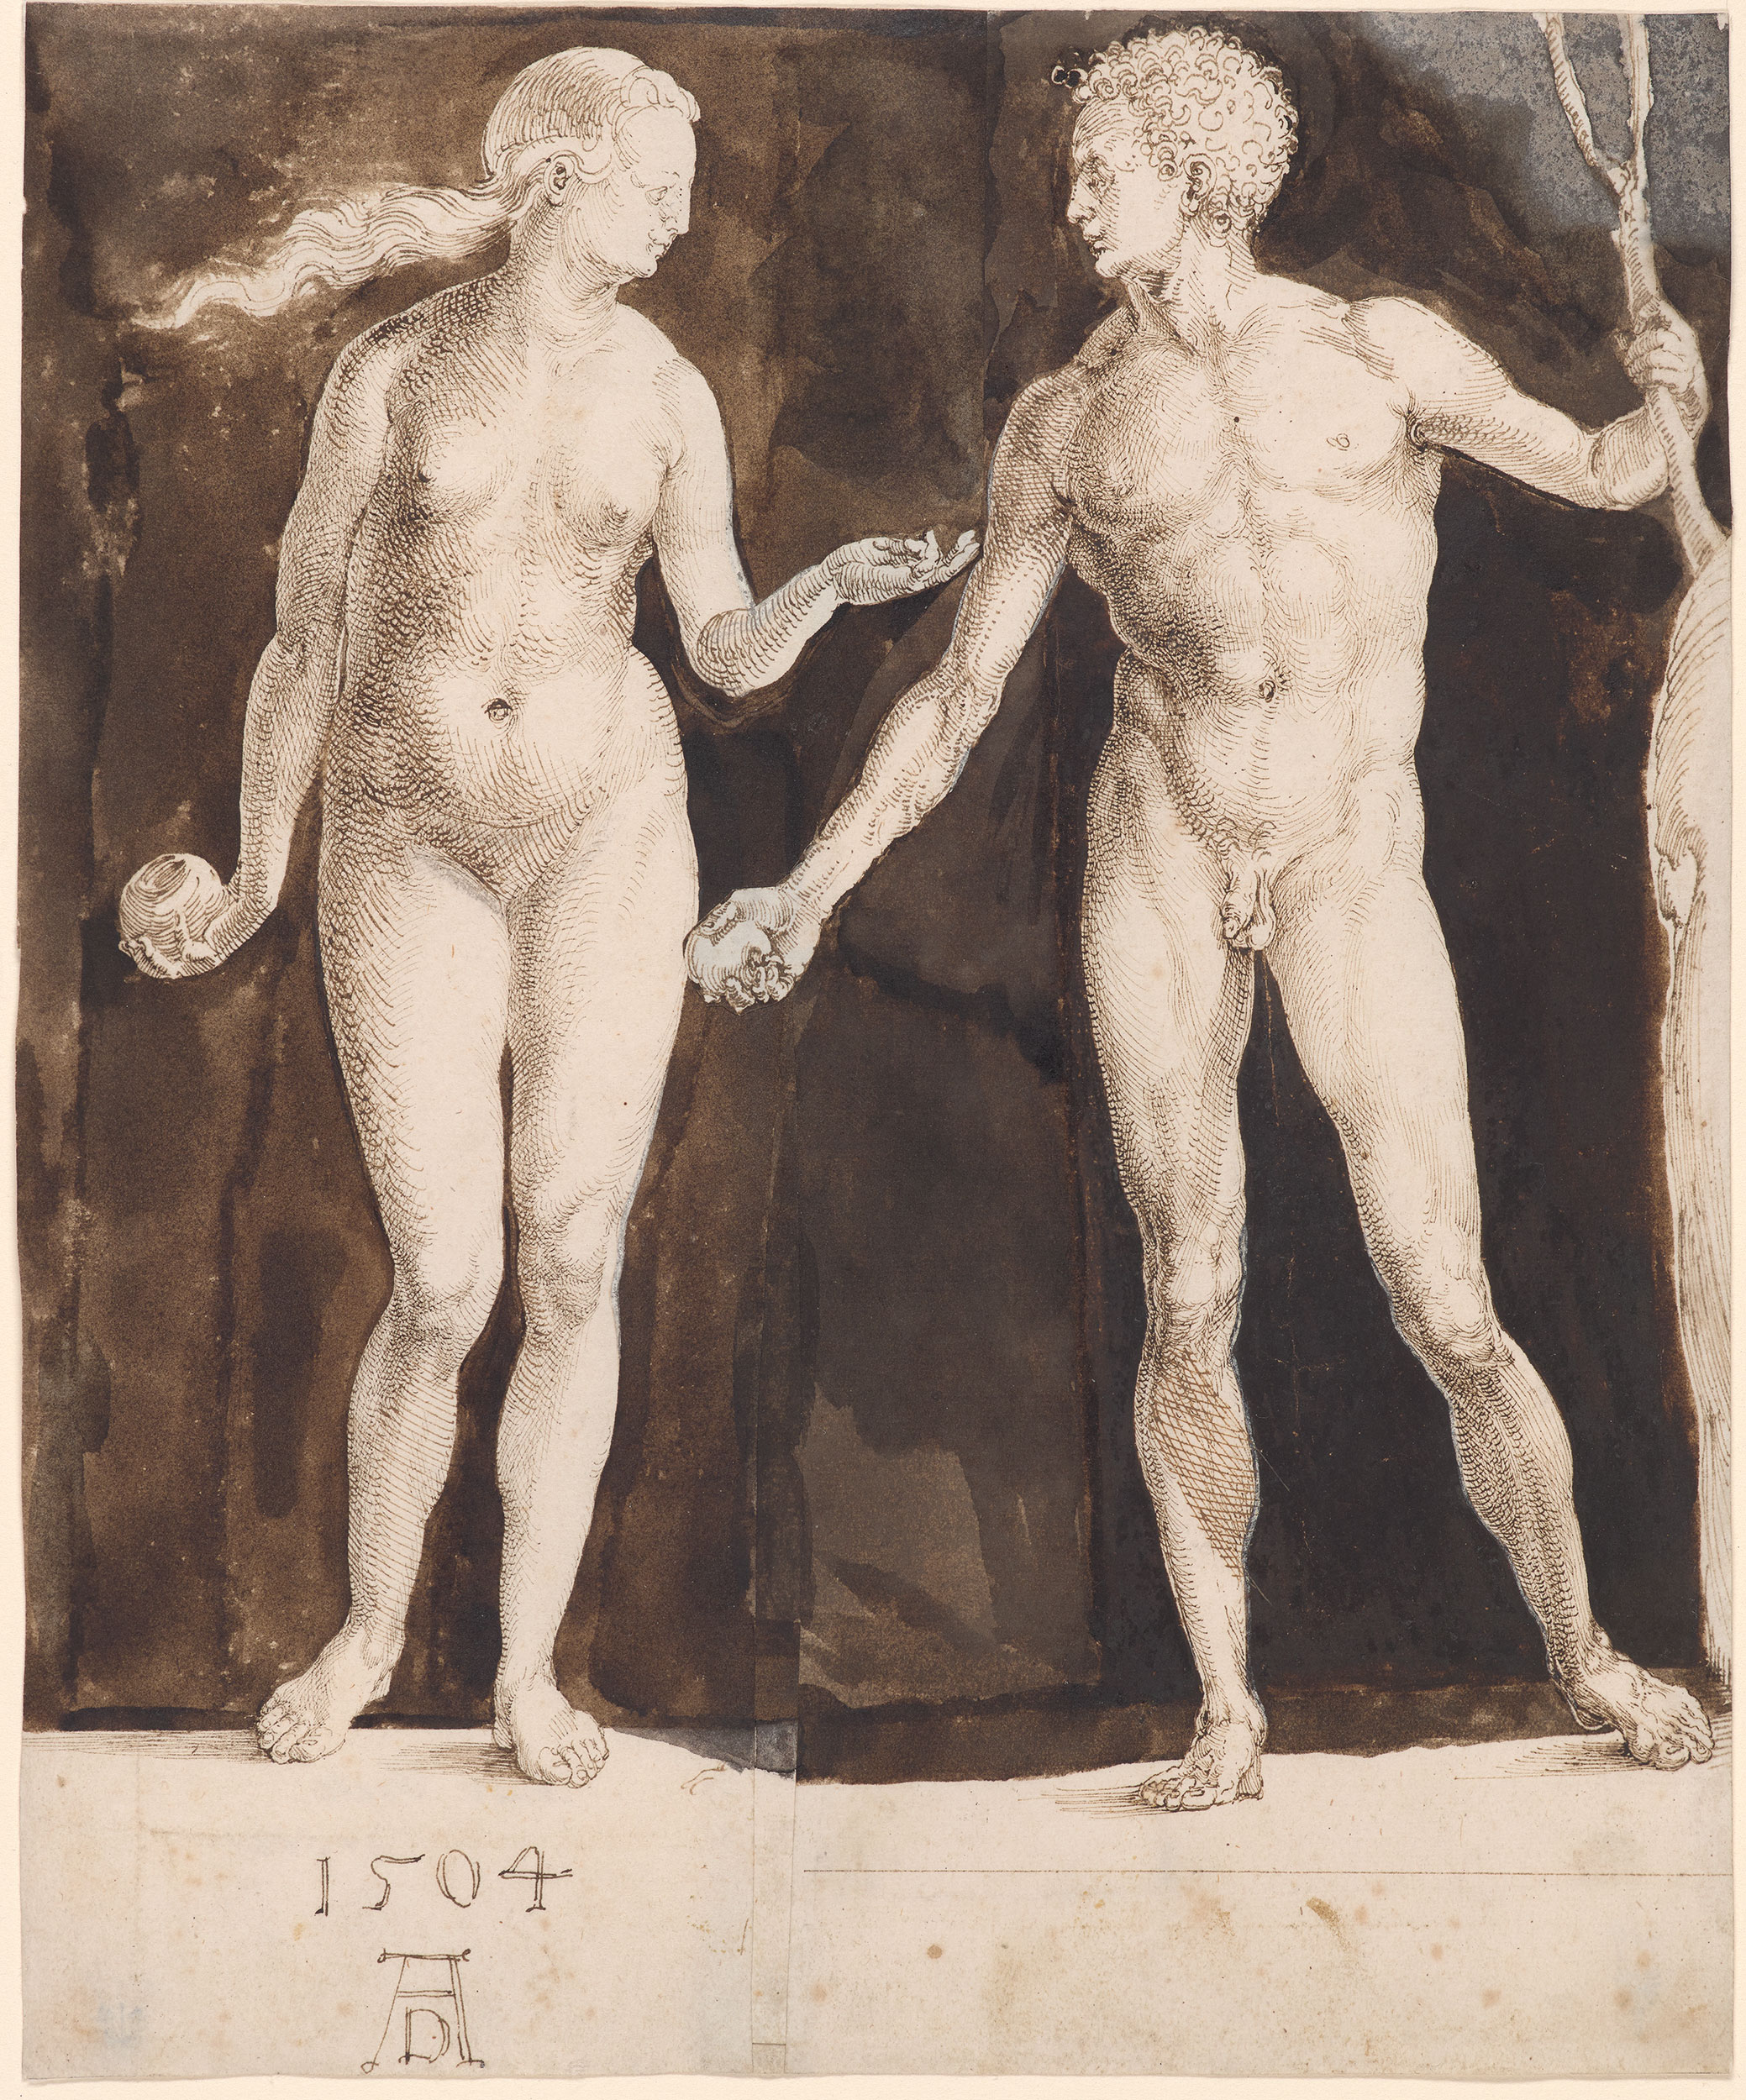 亚当和夏娃 by 阿尔布雷希特· 丢勒 - 1504 - 242 x 201 mm 